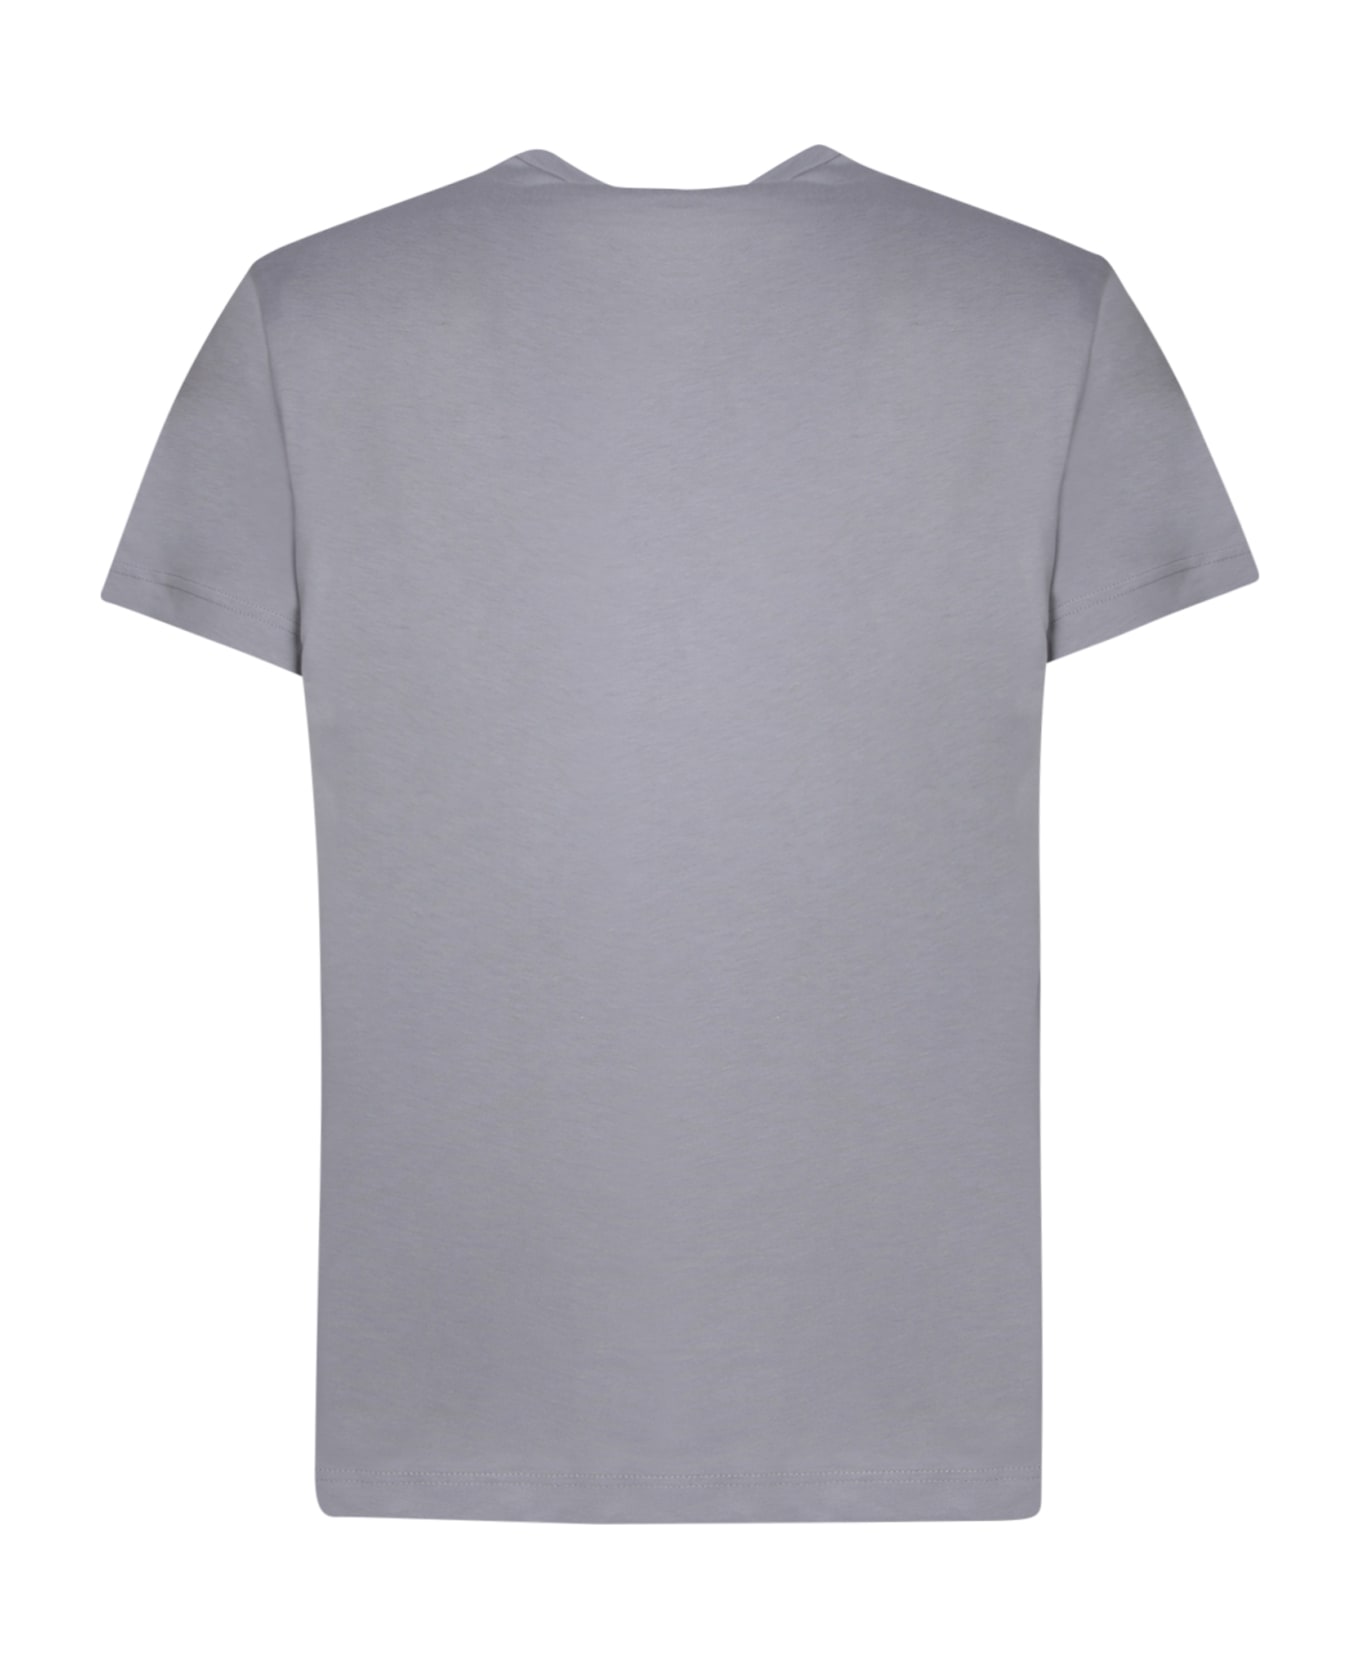 Comme des Garçons Shirt Regular Fit Grey T-shirt - Grey シャツ